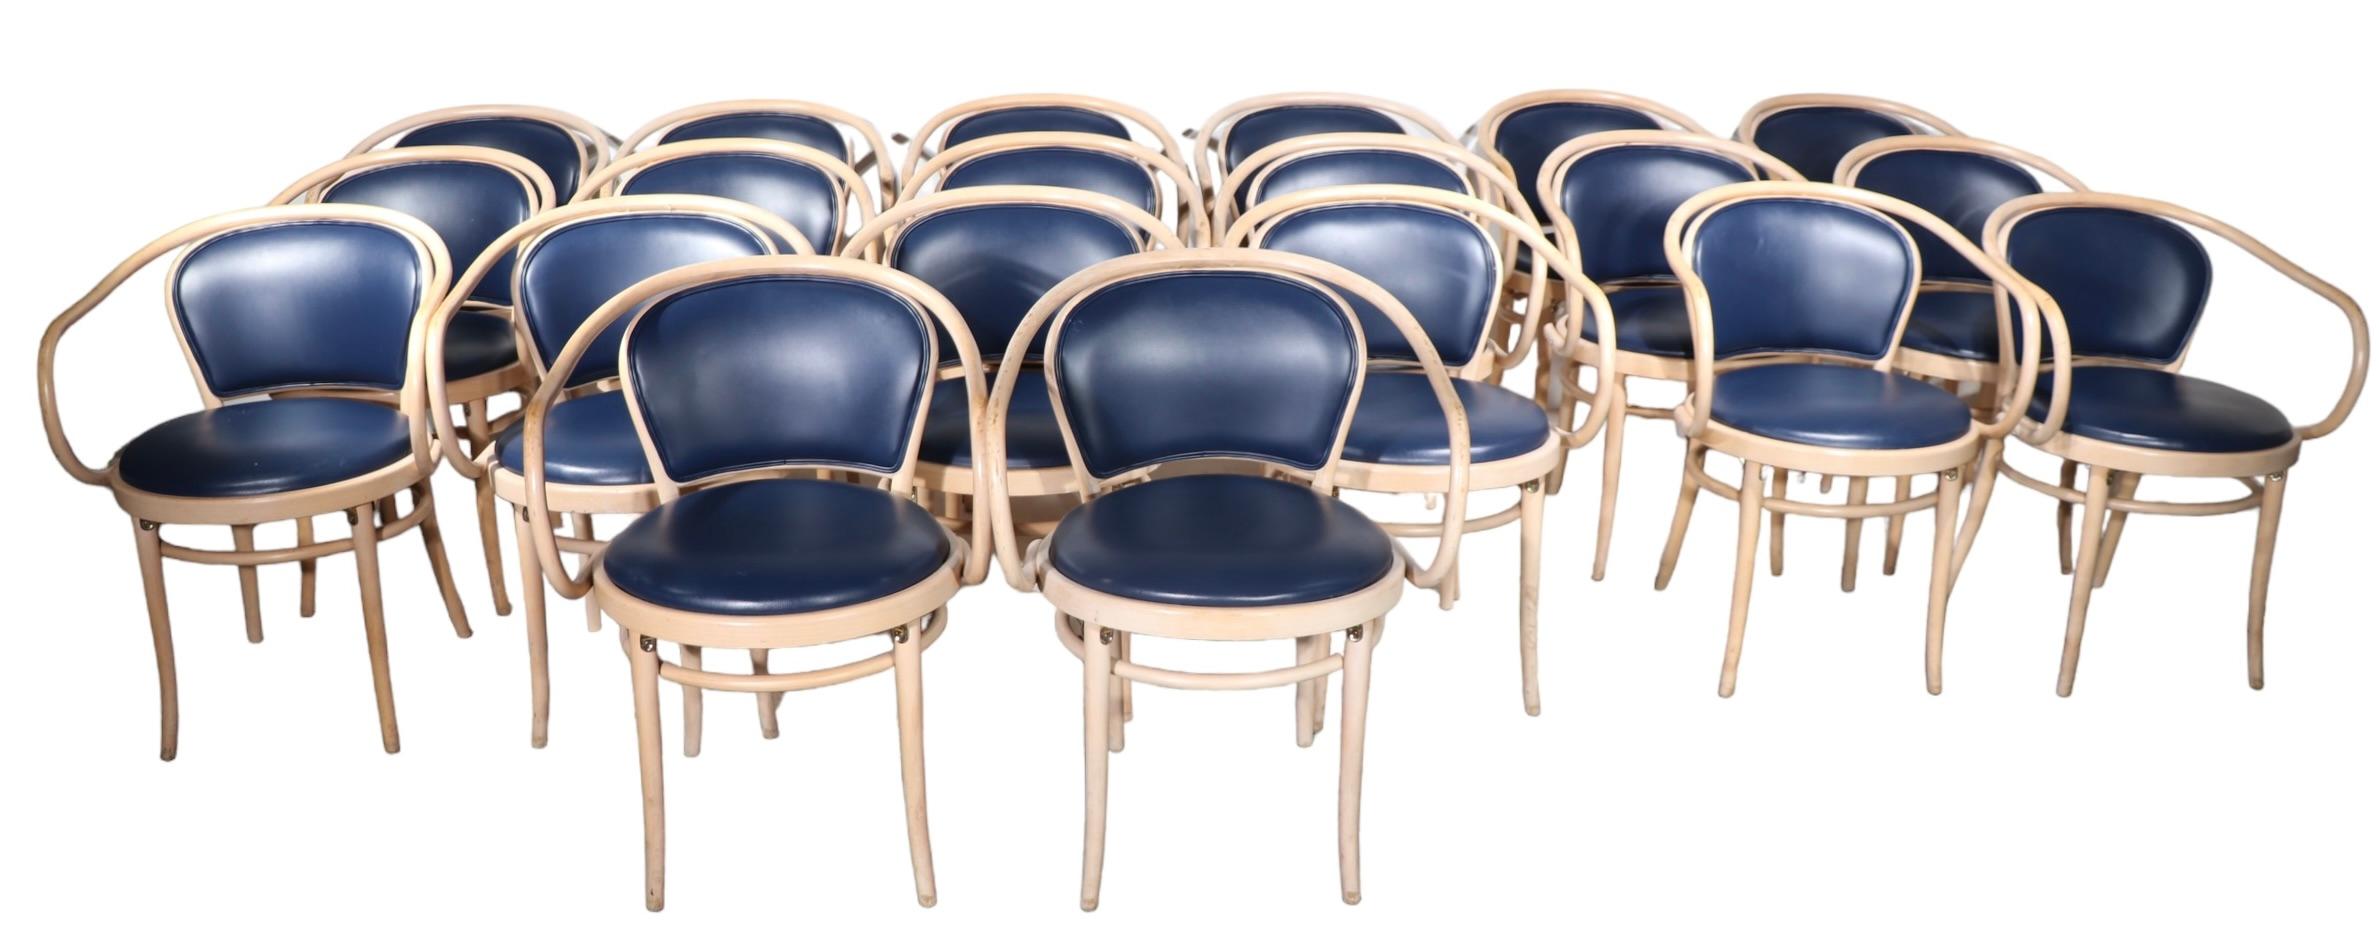 Fauteuil(s) iconique(s) en bois courbé au design sécessionniste viennois, fabriqué(s) par TON. Les chaises sont en hêtre courbé.  piétements en finition blanchie, avec assises et dossiers en Naugahyde bleu foncé, les dossiers des assises sont